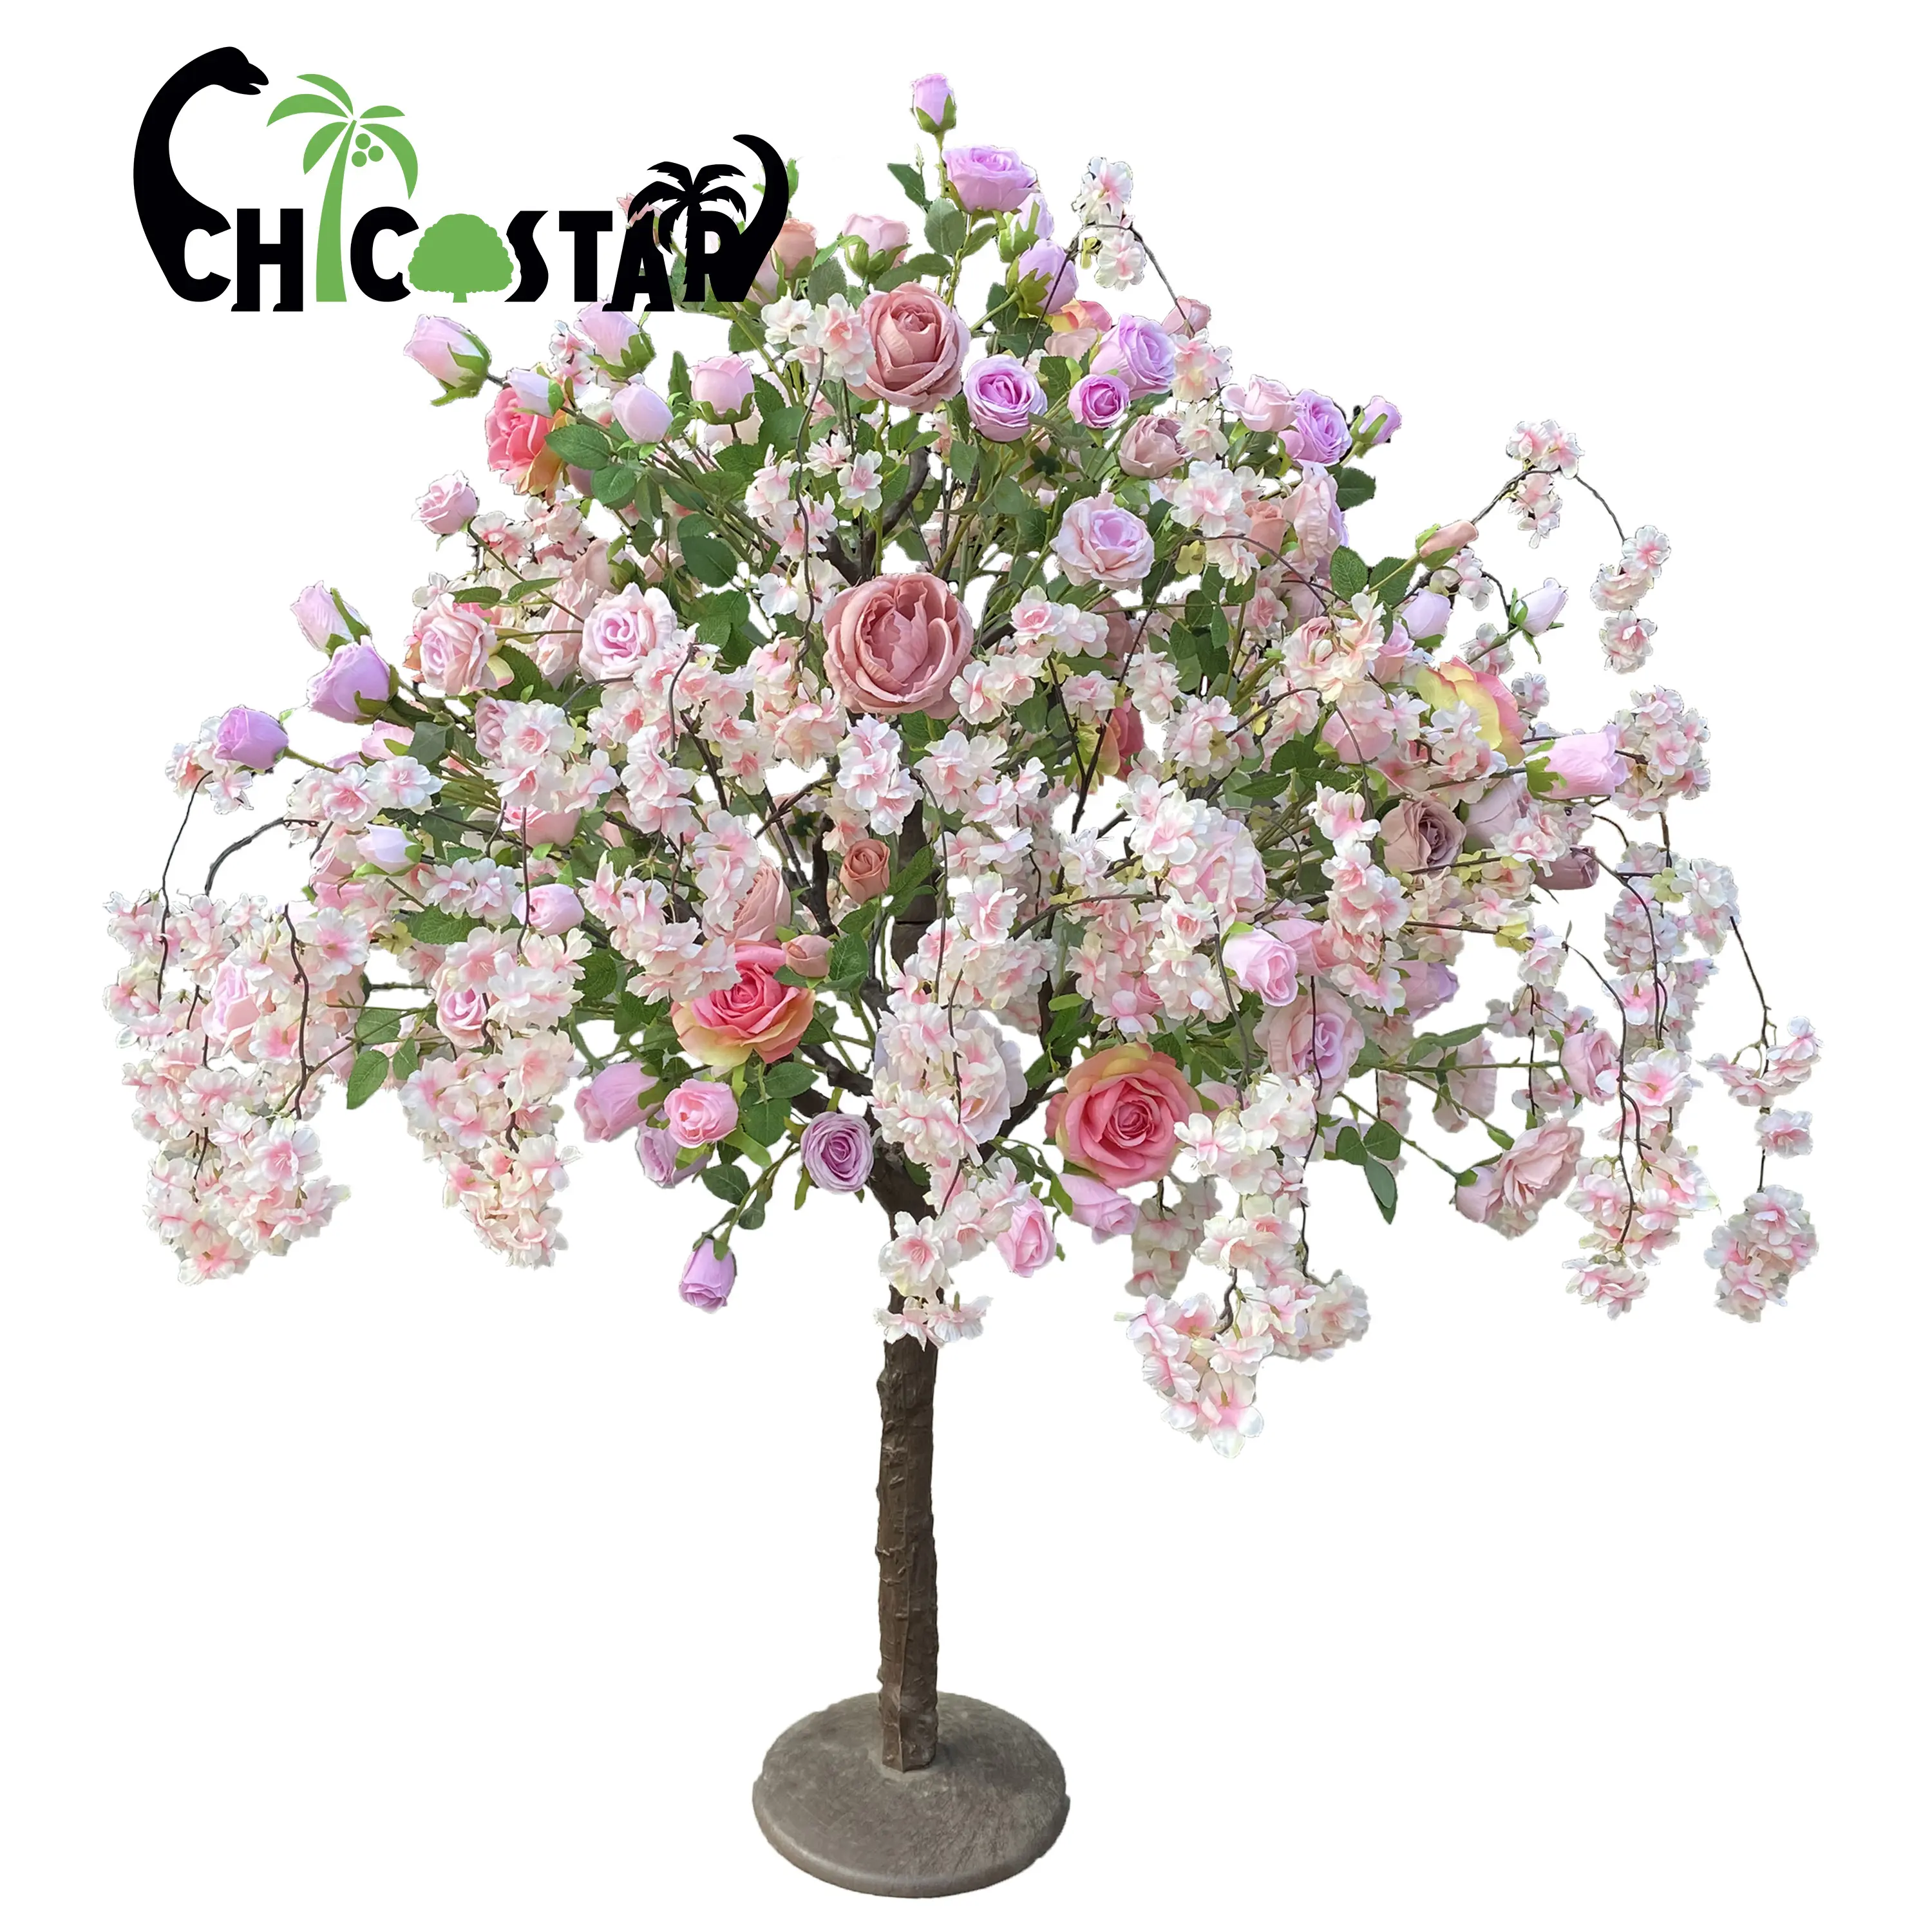 Pohon bunga meja kecil realistis palsu bunga mawar merah muda pohon mawar buatan untuk dijual